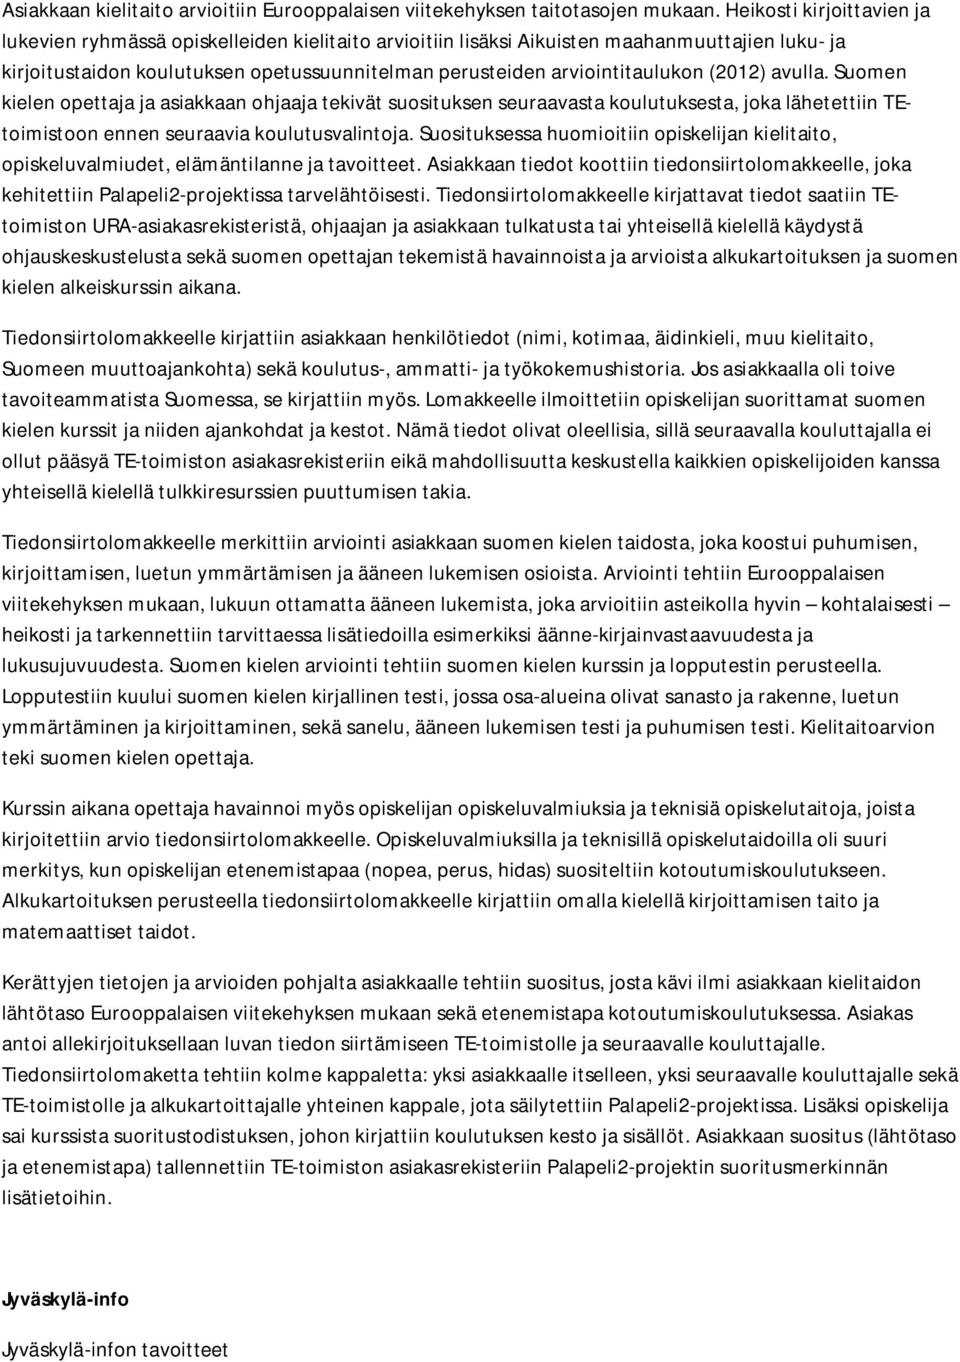 arviointitaulukon (2012) avulla. Suomen kielen opettaja ja asiakkaan ohjaaja tekivät suosituksen seuraavasta koulutuksesta, joka lähetettiin TEtoimistoon ennen seuraavia koulutusvalintoja.